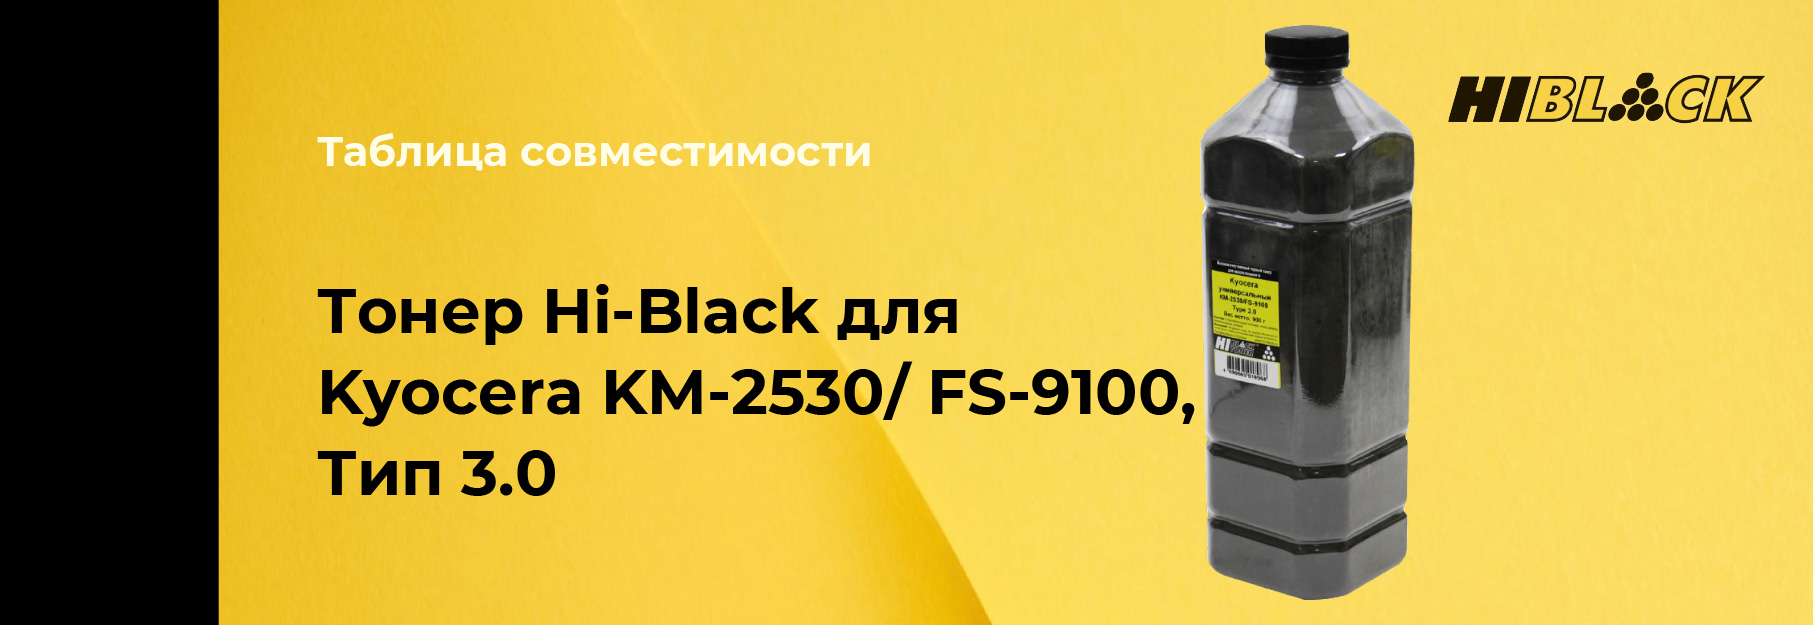 tablica-sovmestimosti-Hi-Black-Kyocera-KM-2530,-type-3-0.jpg